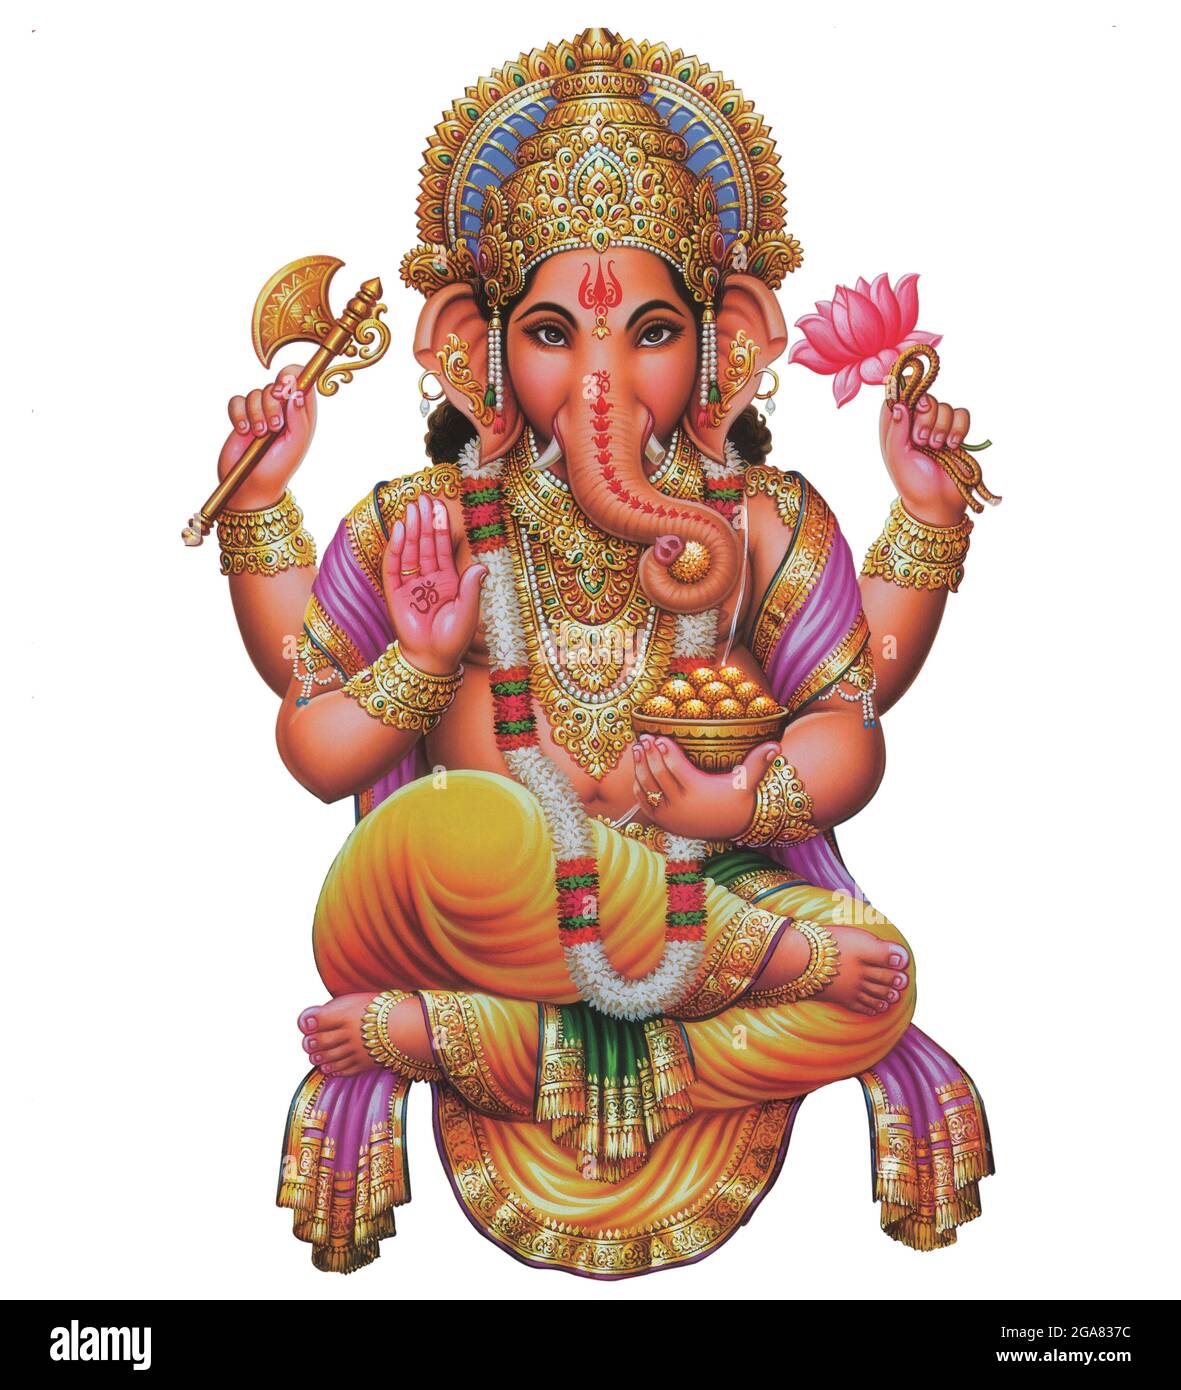 Indischer Gott Ganesha, indischer Lord Ganesh, indisches mythologisches  Bild von Ganesha Stockfotografie - Alamy